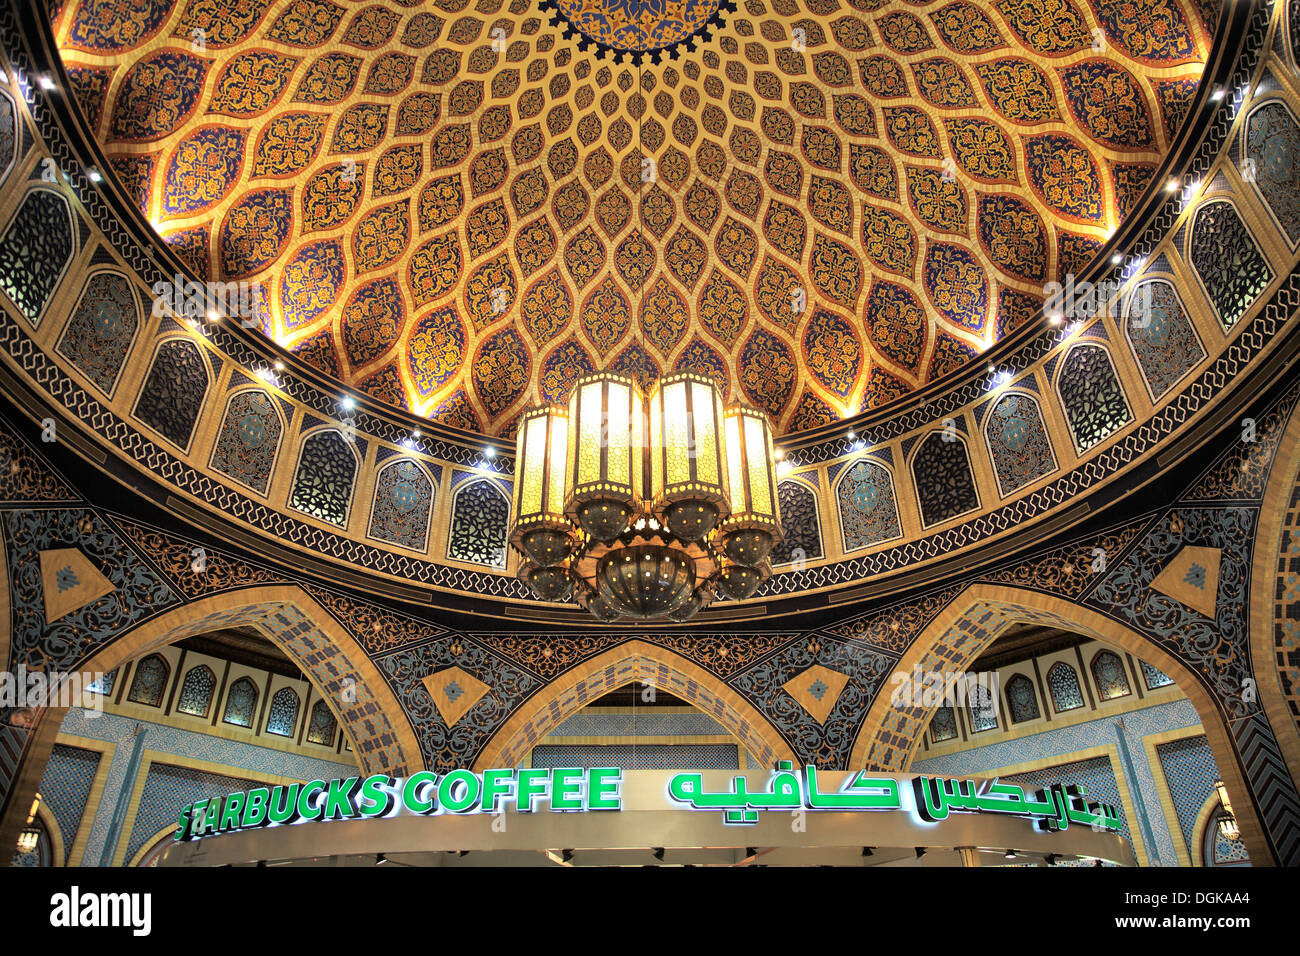 Eine traditionelle iranische Kuppel kontrastiert gegen einen Starbucks in der Ibn-Batutta-Mall. Stockfoto